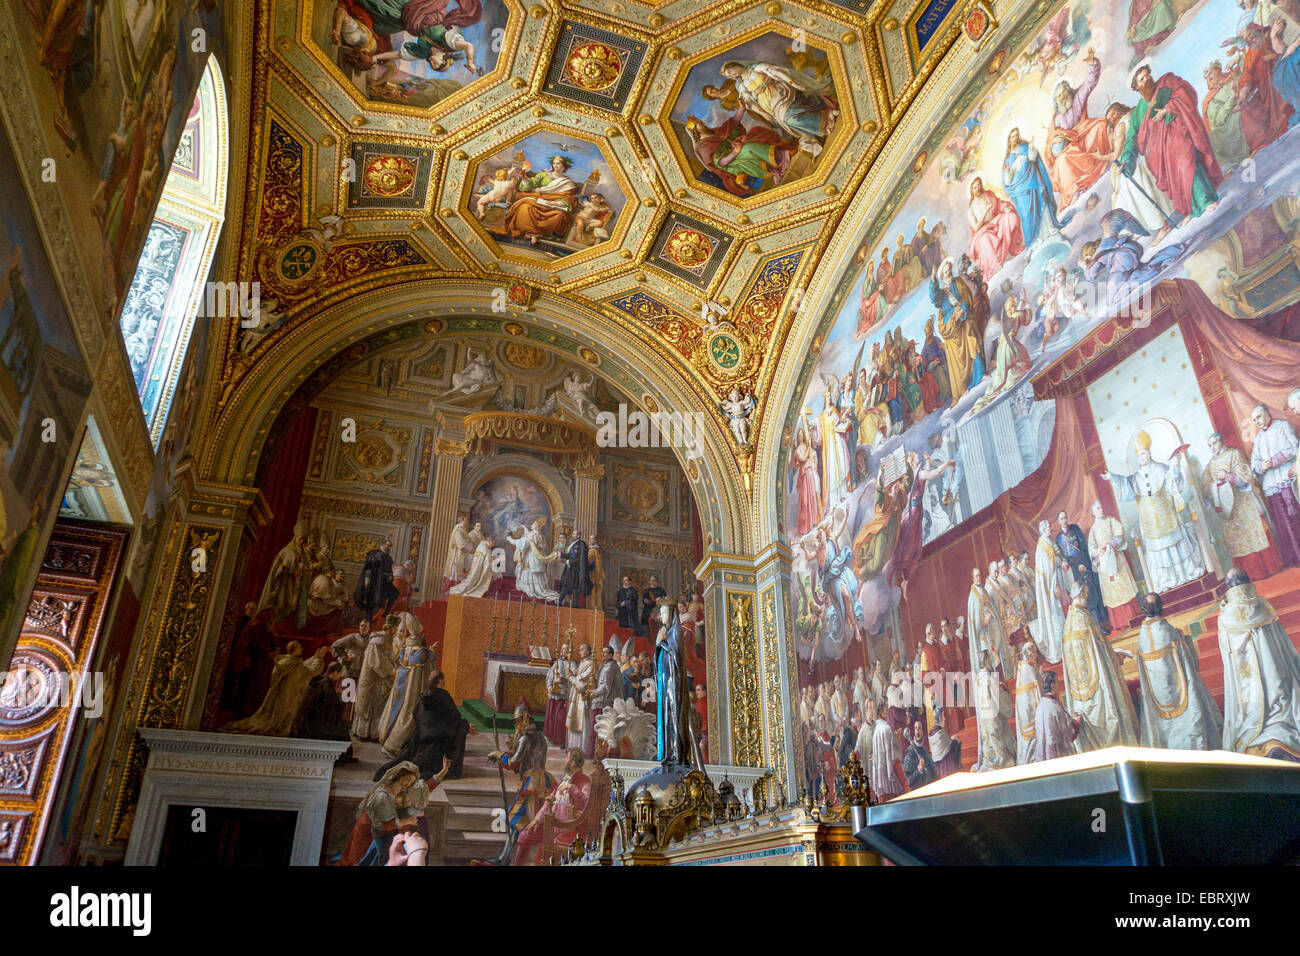 Ciudad del Vaticano: La Cappella di Urbano VIII. (Capilla de Urbano VIII.) en los Museos Vaticanos. Foto del 4 de septiembre de 2014. Foto de stock